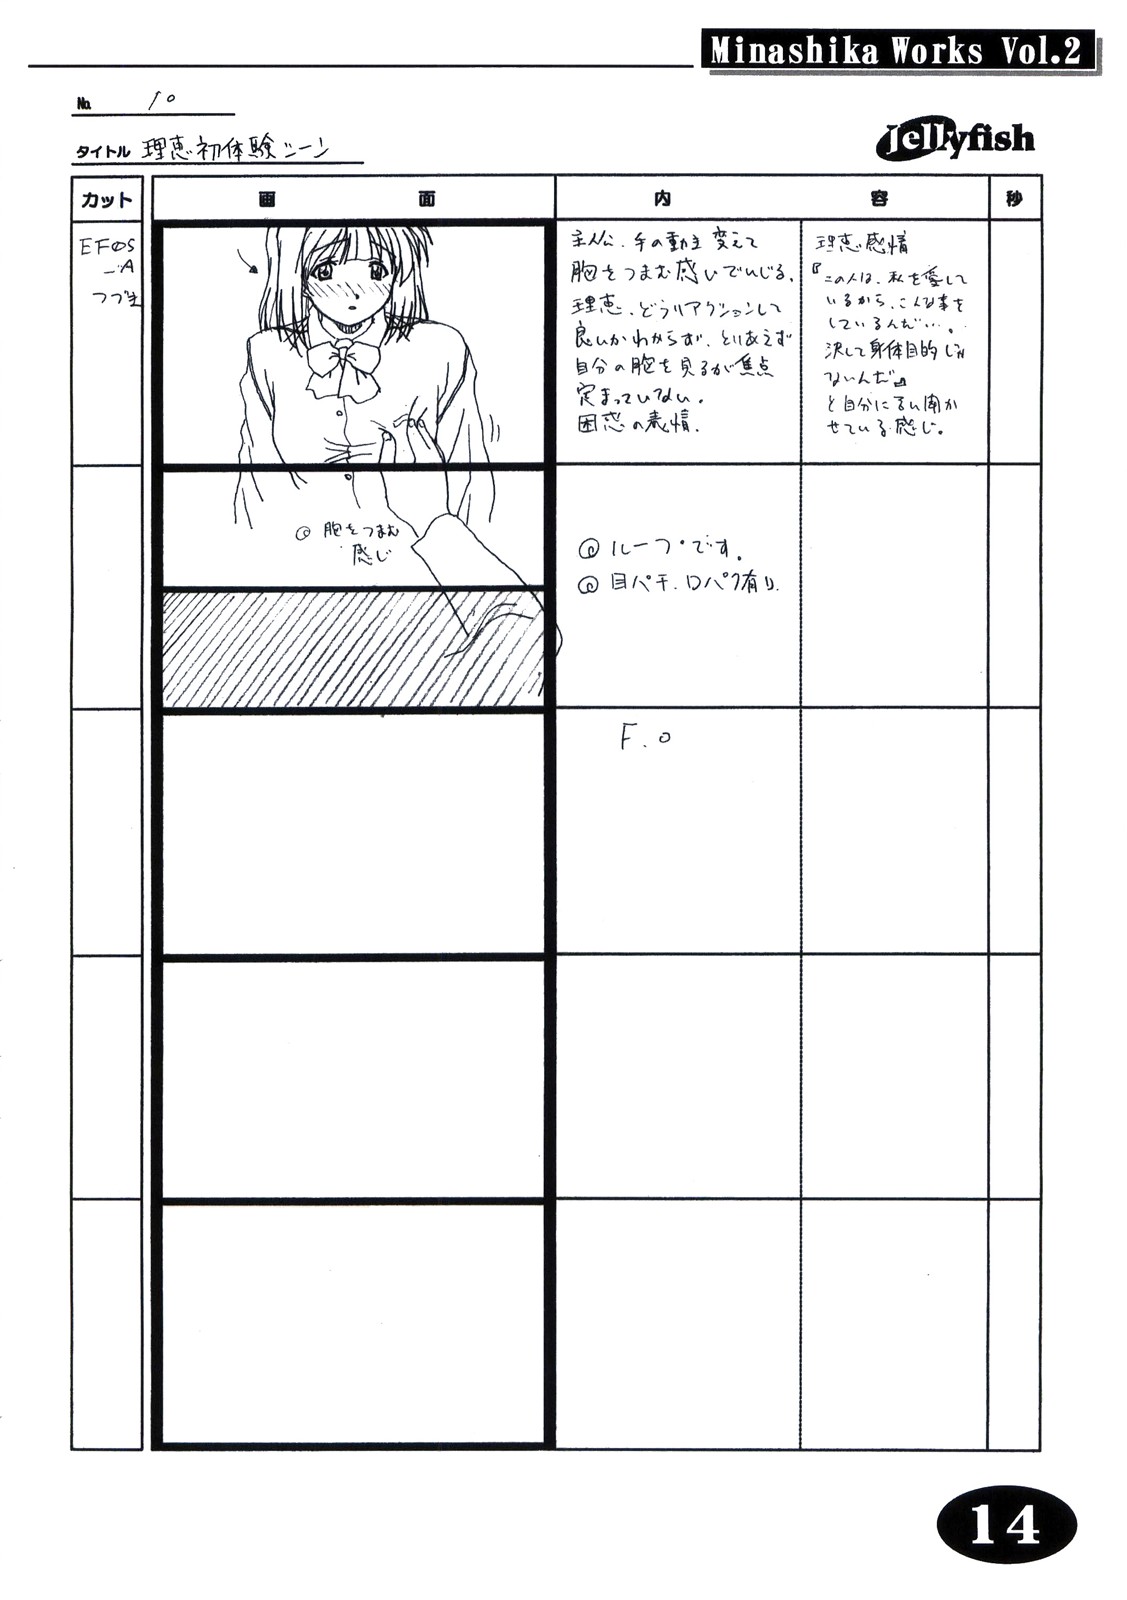 [マキノ事務所(滝美梨香)] Minasika Works Vol.2 「LOVERS ～恋に落ちたら…～」絵コンテ集